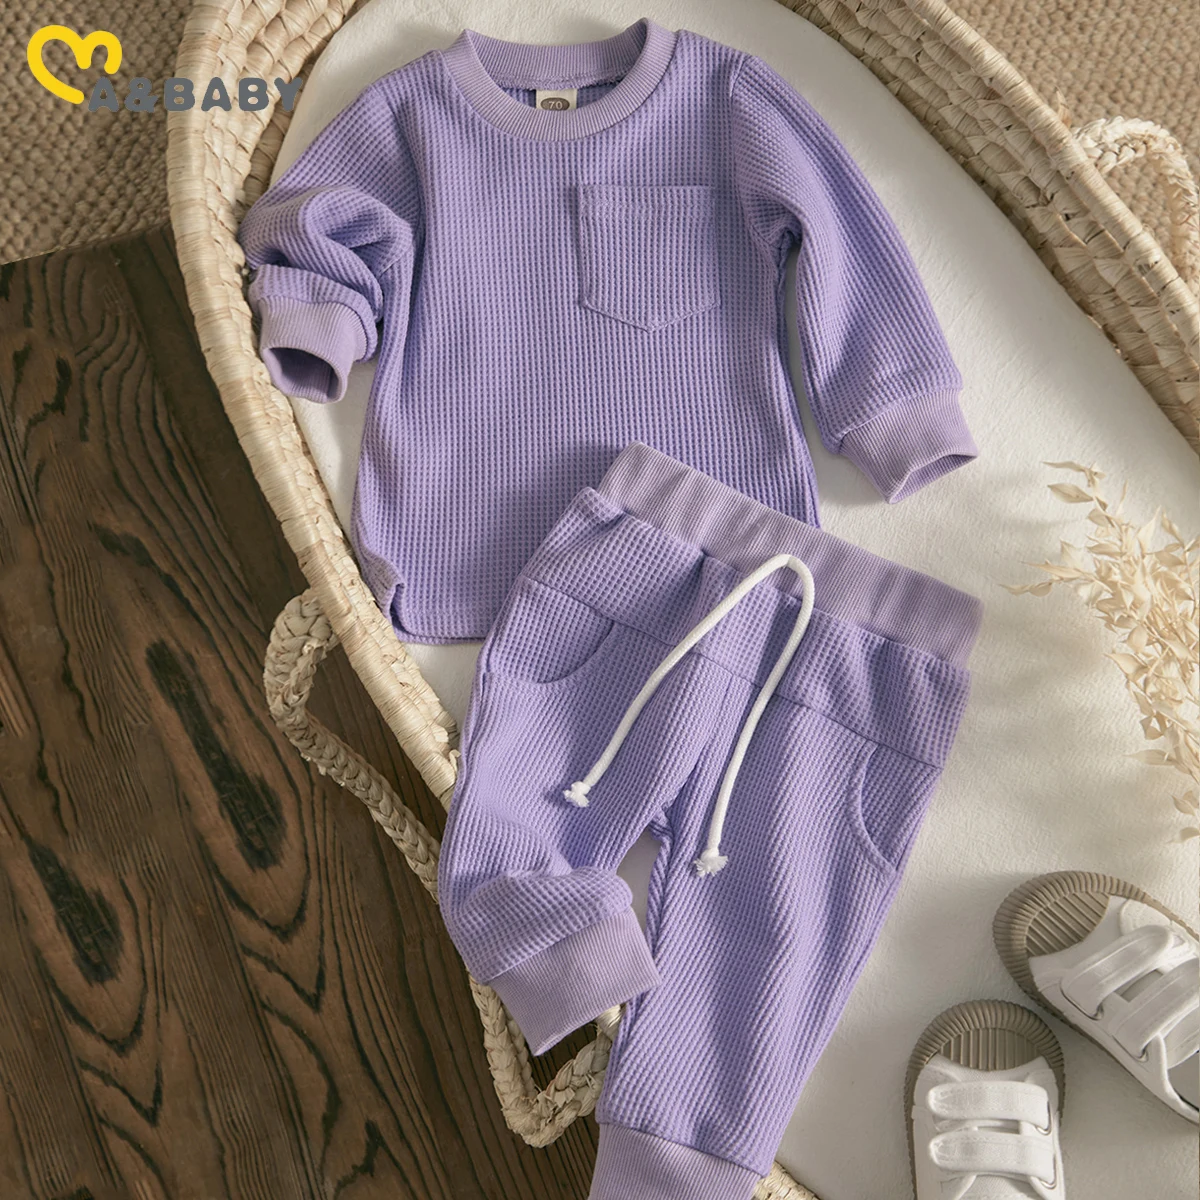 

Женский однотонный комплект одежды Ma & Baby, Топ с длинным рукавом и карманами, штаны, на возраст 0-24 месяца, осень-весна